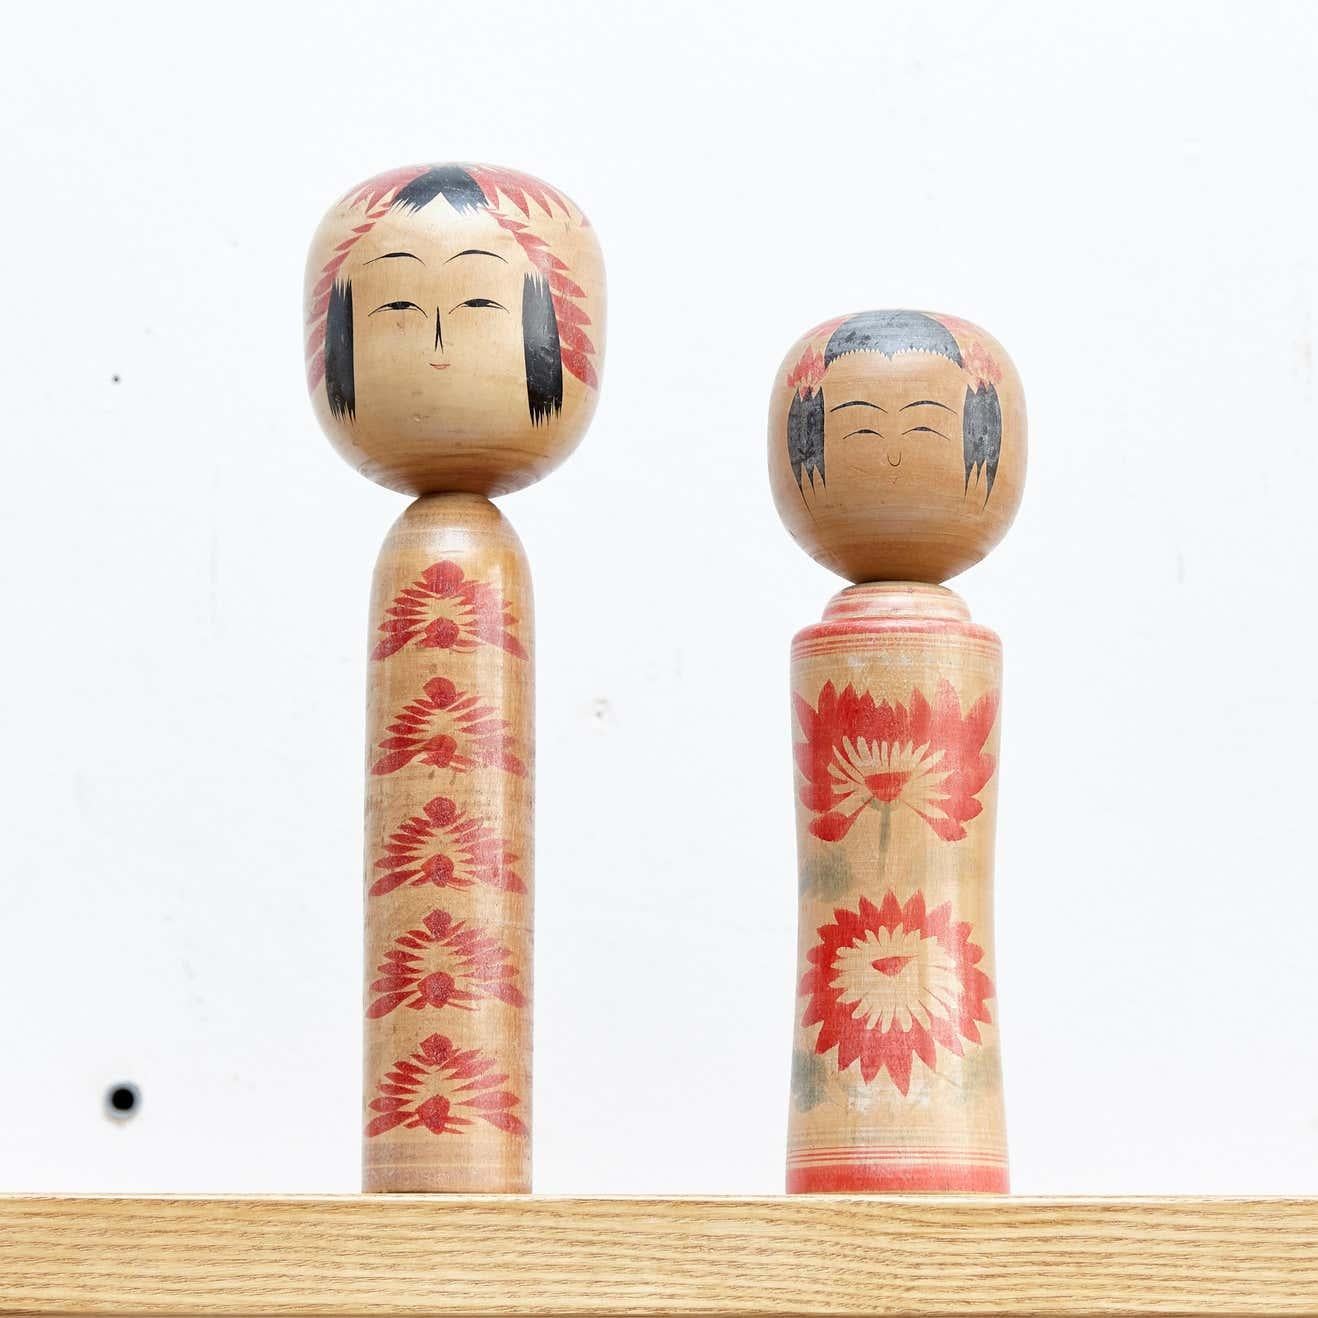 Japanische Puppen, Kokeshi genannt, aus dem frühen 20. Jahrhundert.
Provenienz aus dem nördlichen Japan.
Satz von 2.

Maße: 36 x 10 cm
30 x 7,5 cm

Handgefertigt von japanischen Kunsthandwerkern aus Holz. Sie haben einen einfachen Rumpf als